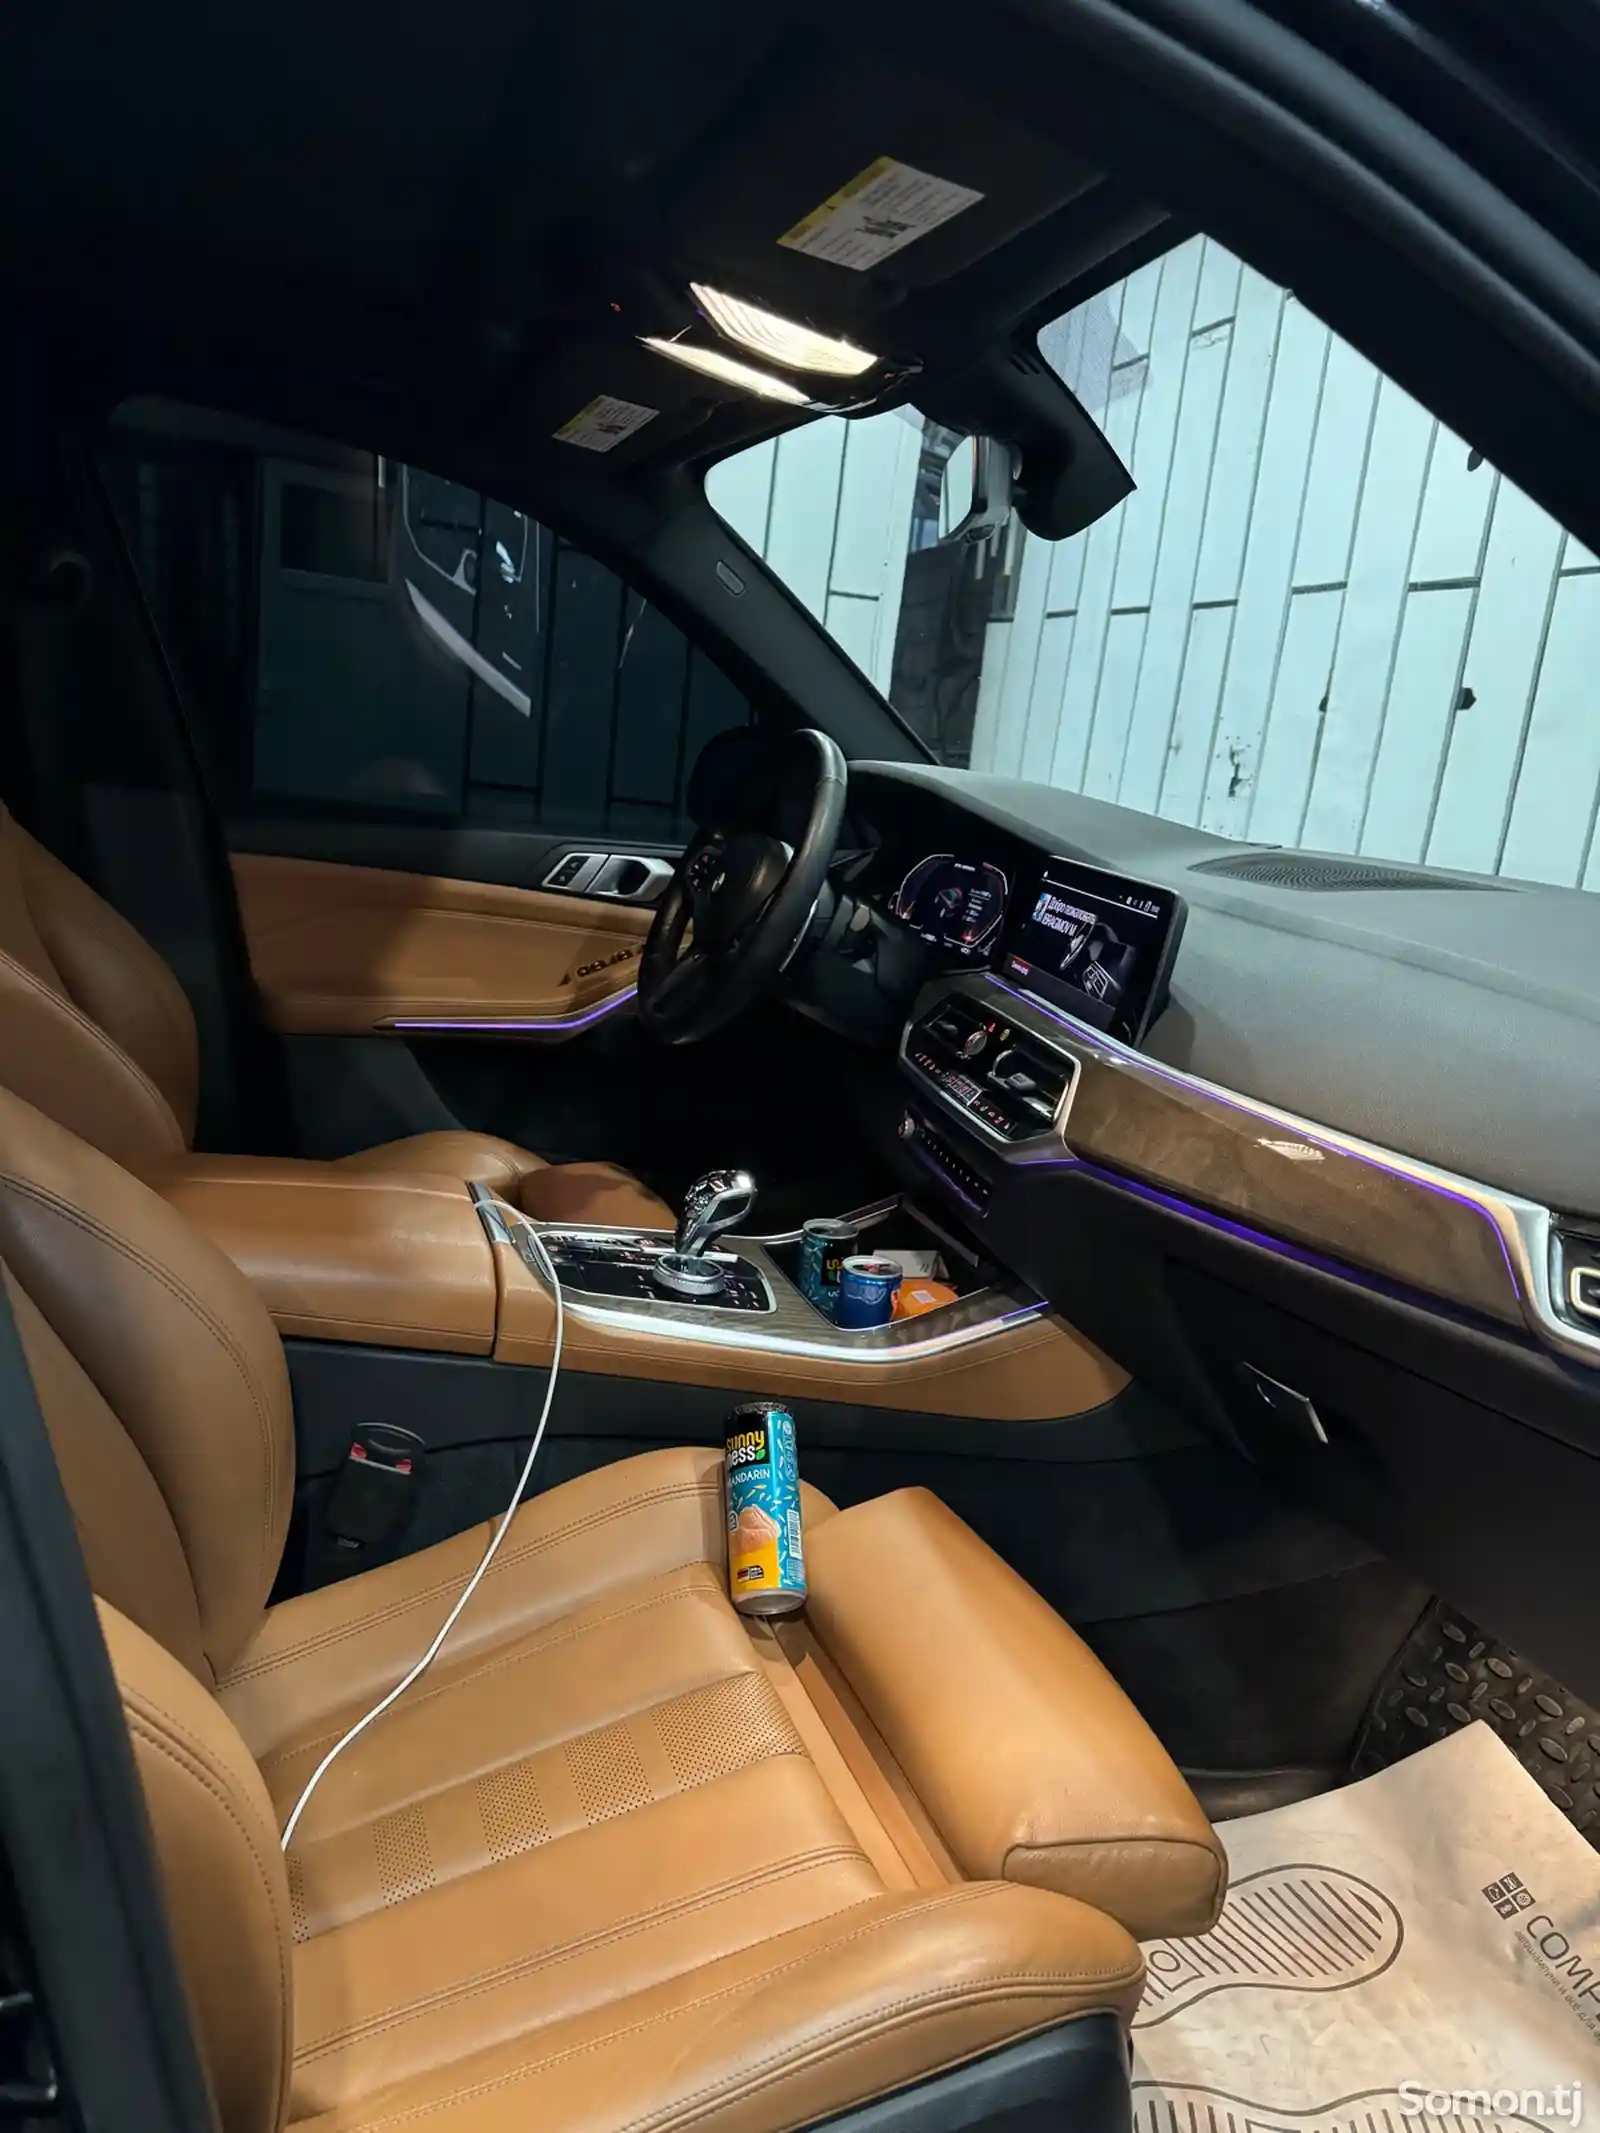 BMW X5, 2019-10